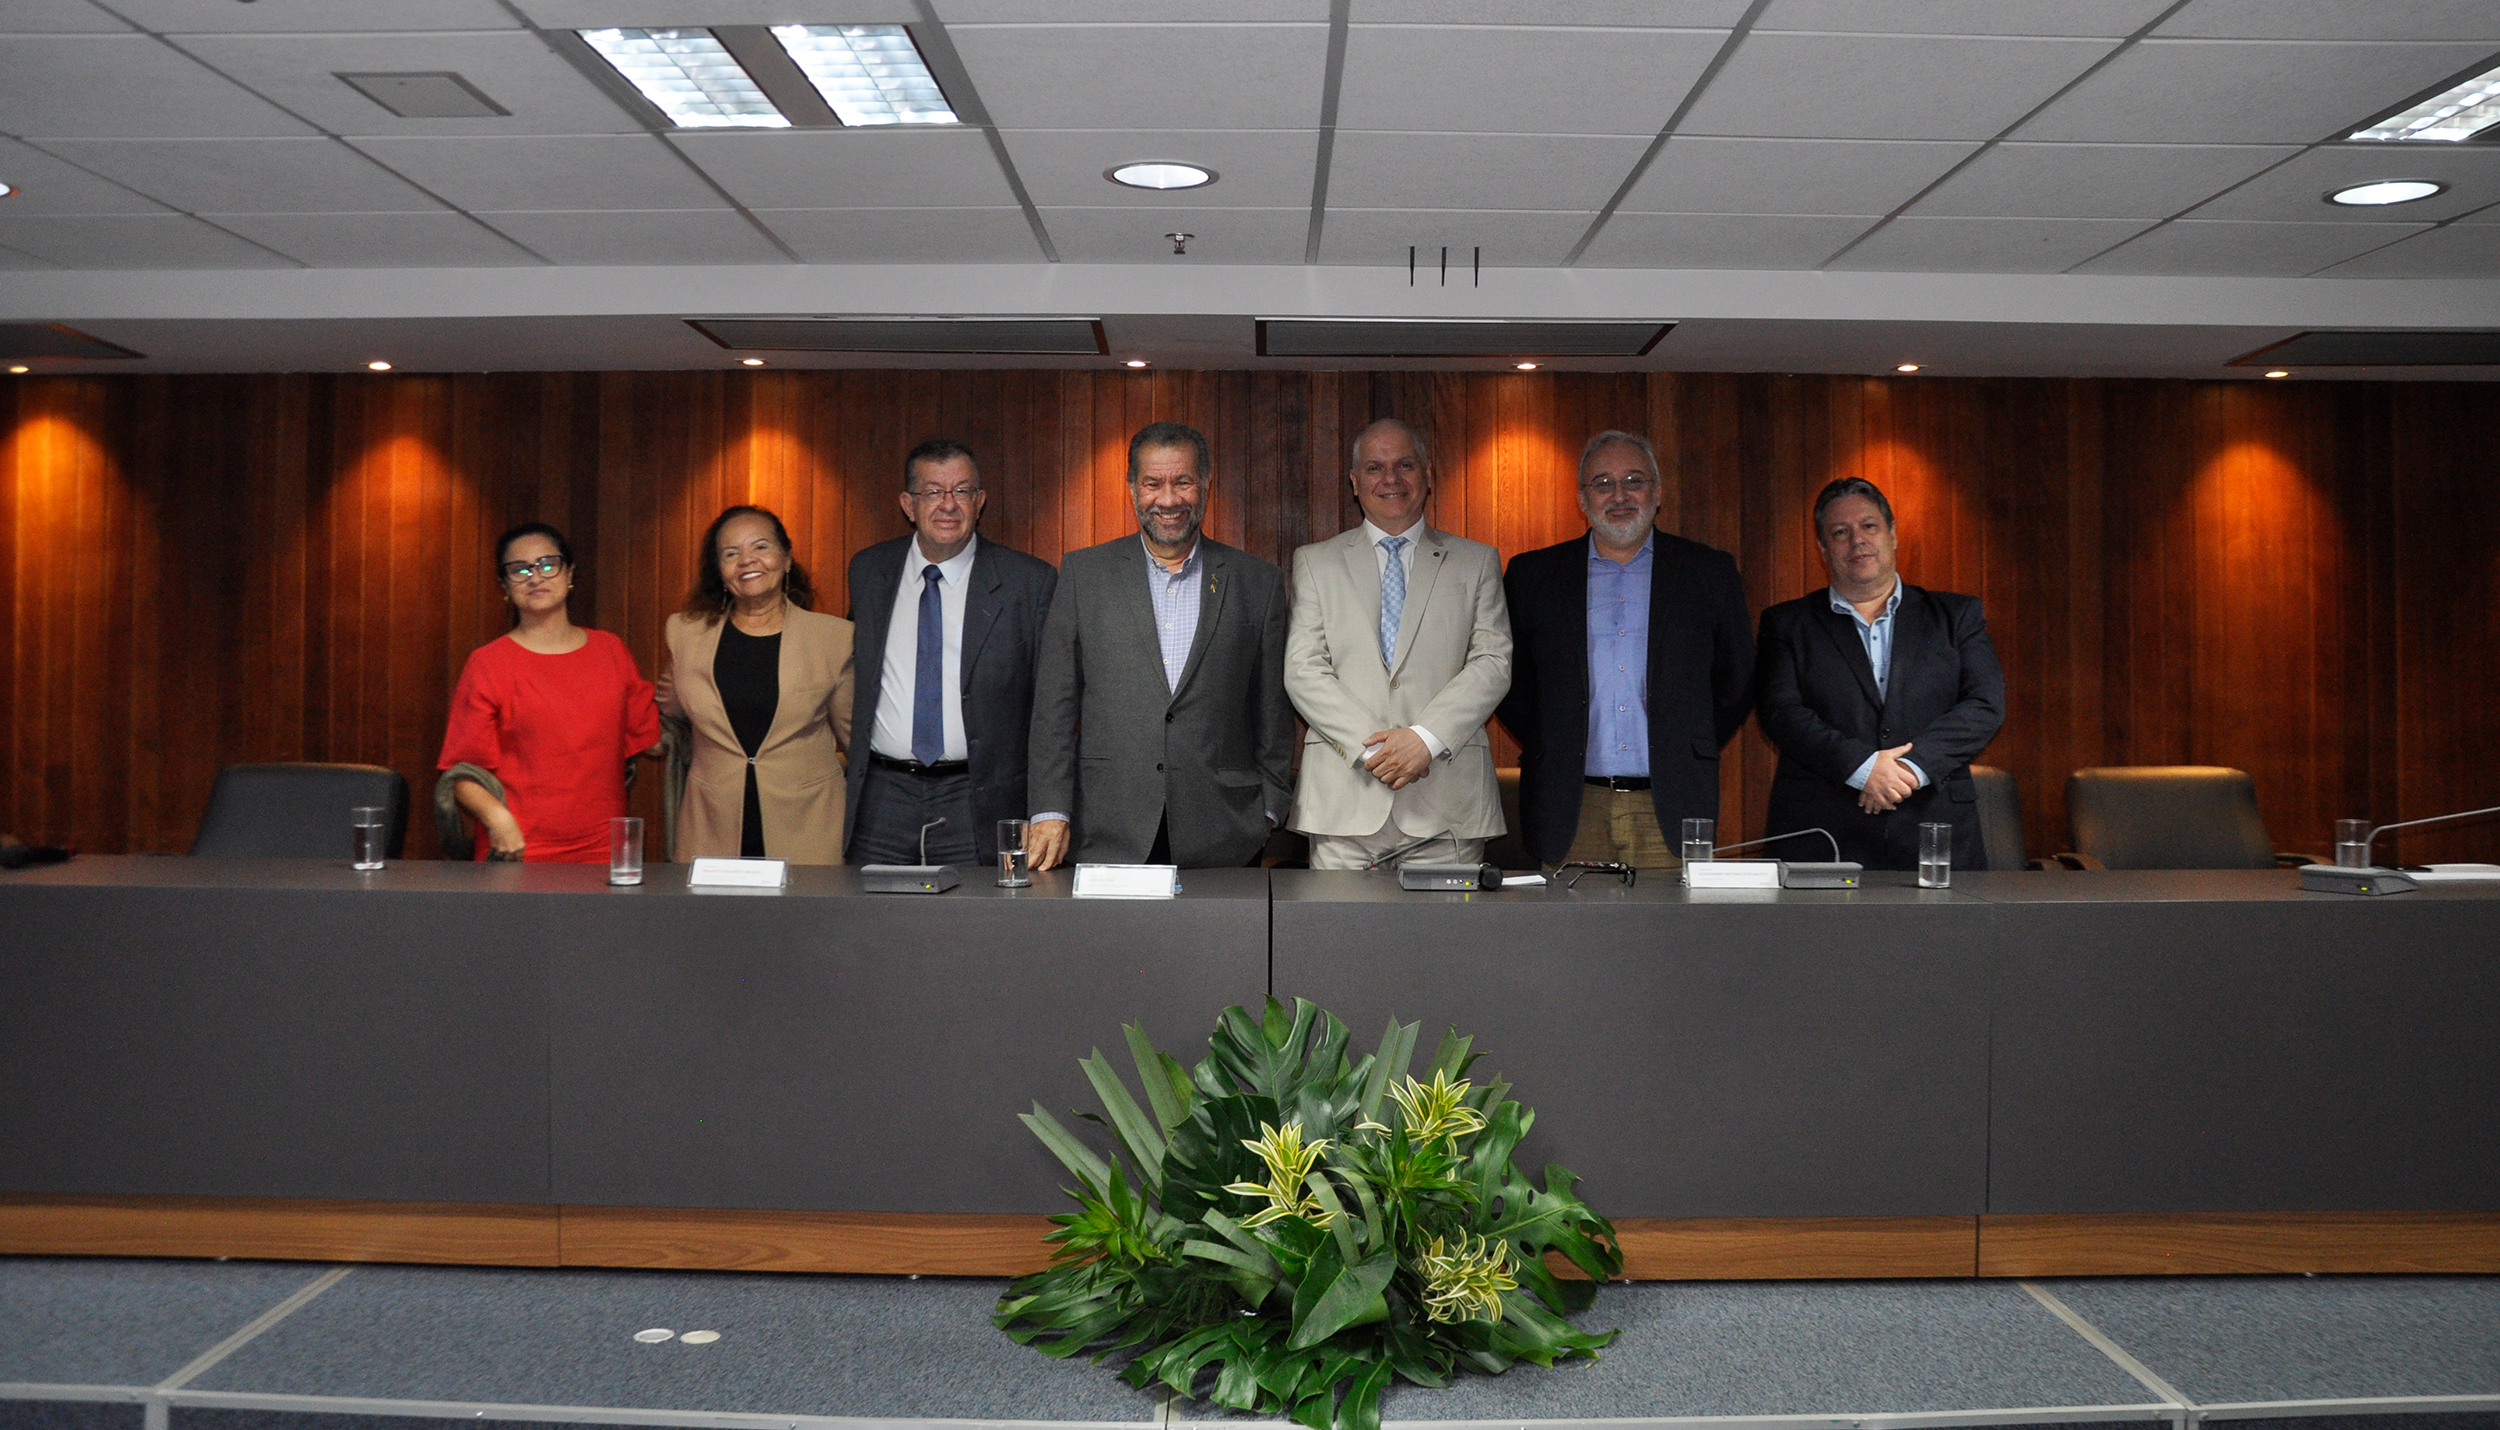 Balanço de um ano de gestão foi realizado durante cerimônia pelos 34 anos do instituto em Brasília